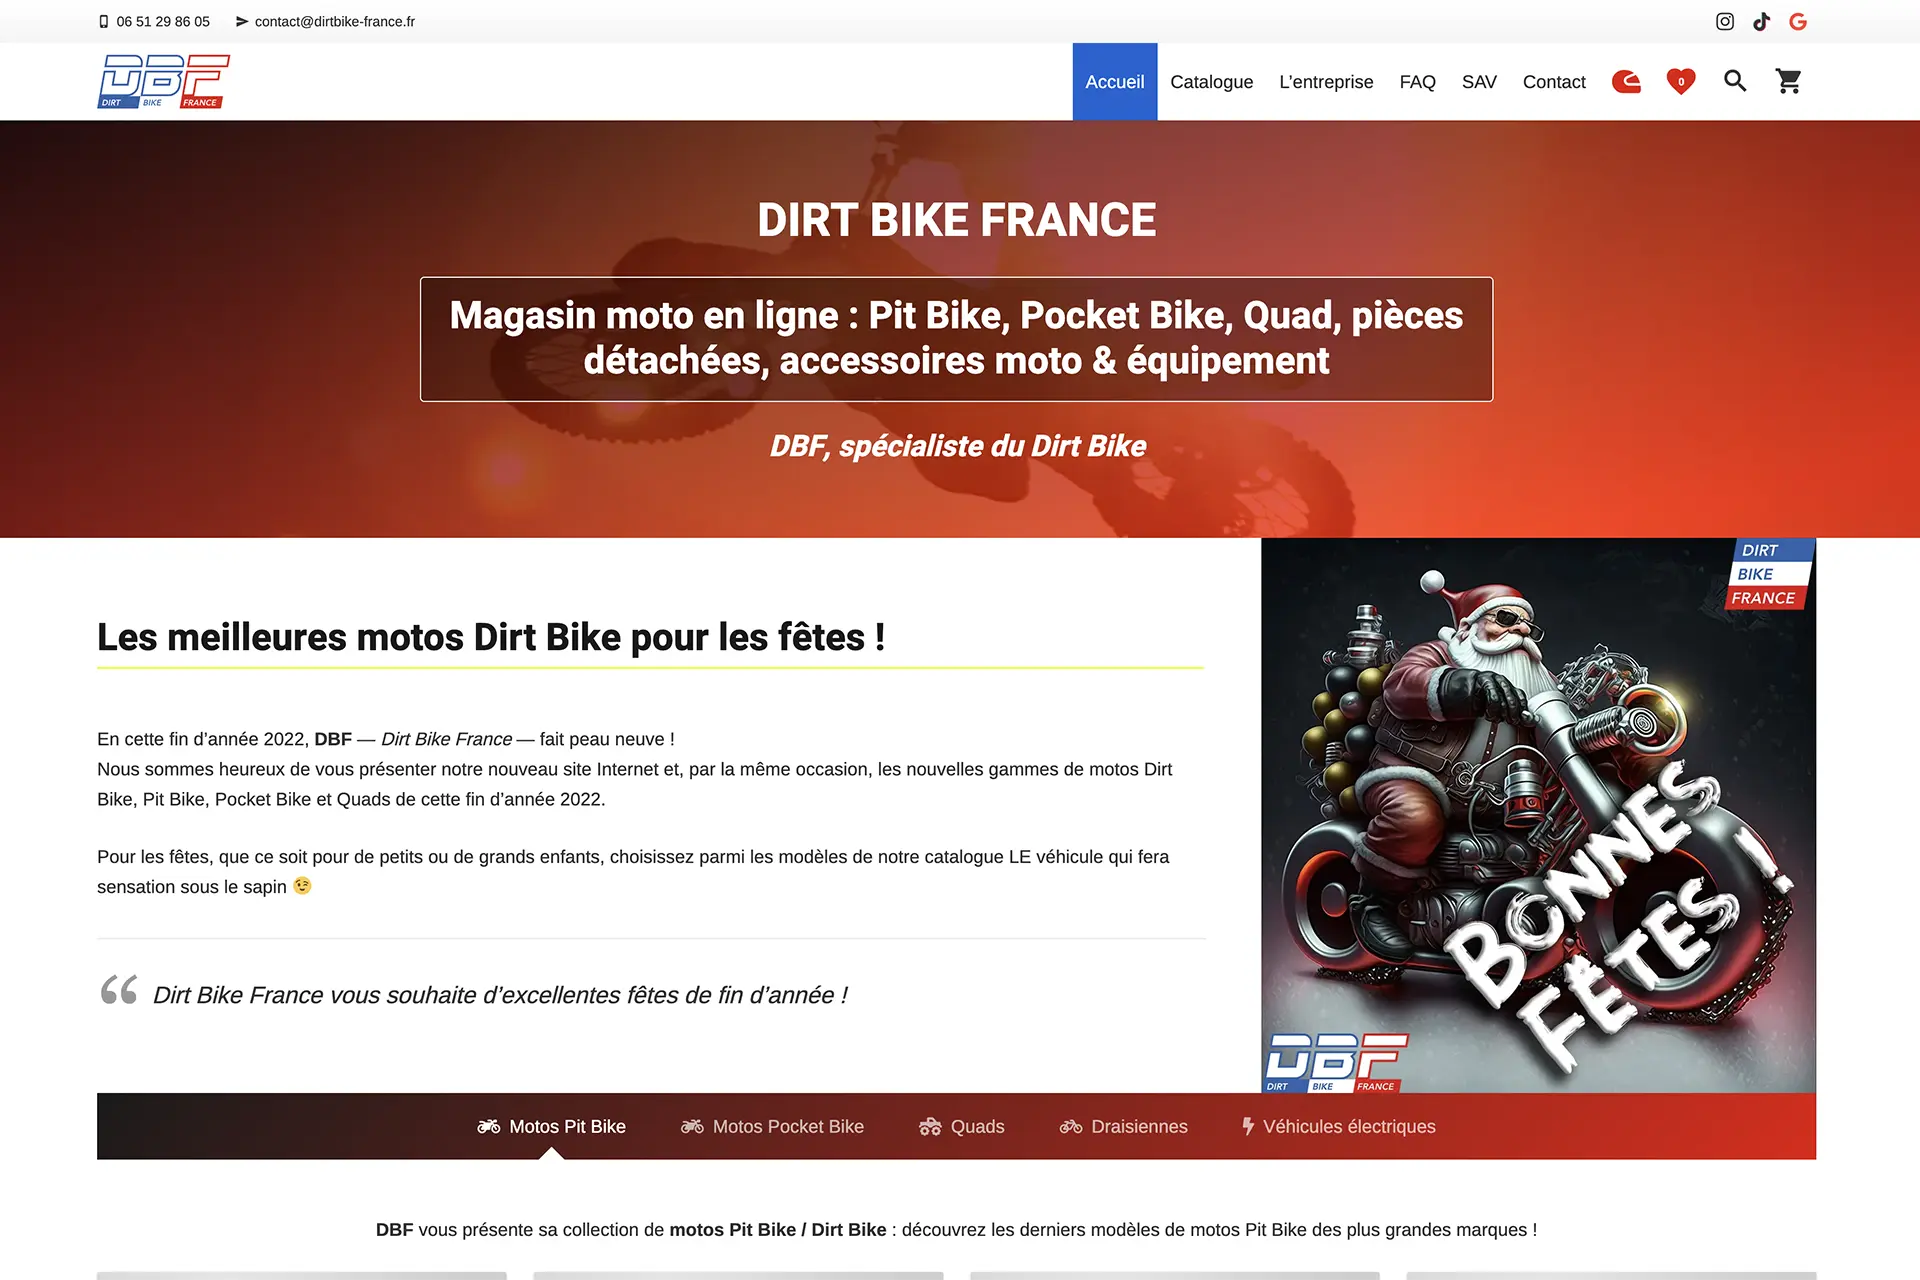 Dirt Bike France, site spécialisé dans la vente de motos Dirt Bike, Pit Bike, Pocket Bike, vente de quads et accessoires & équipement moto